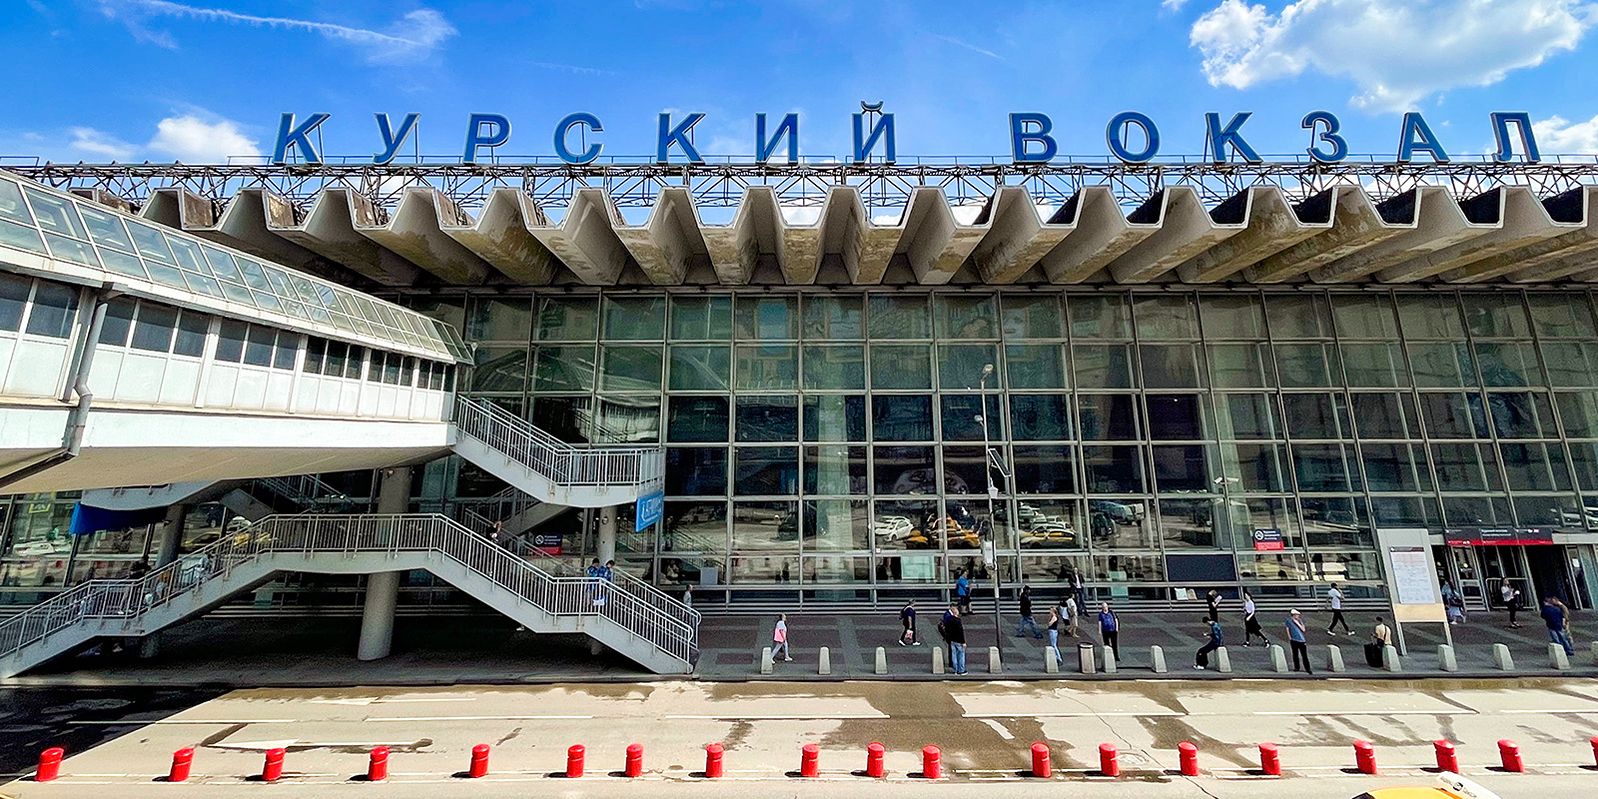 До конца июня текущего года капсулы для сна установят на Курском вокзале. Фото: Владимир Новиков, пресс-служба мэра и Правительства Москвы